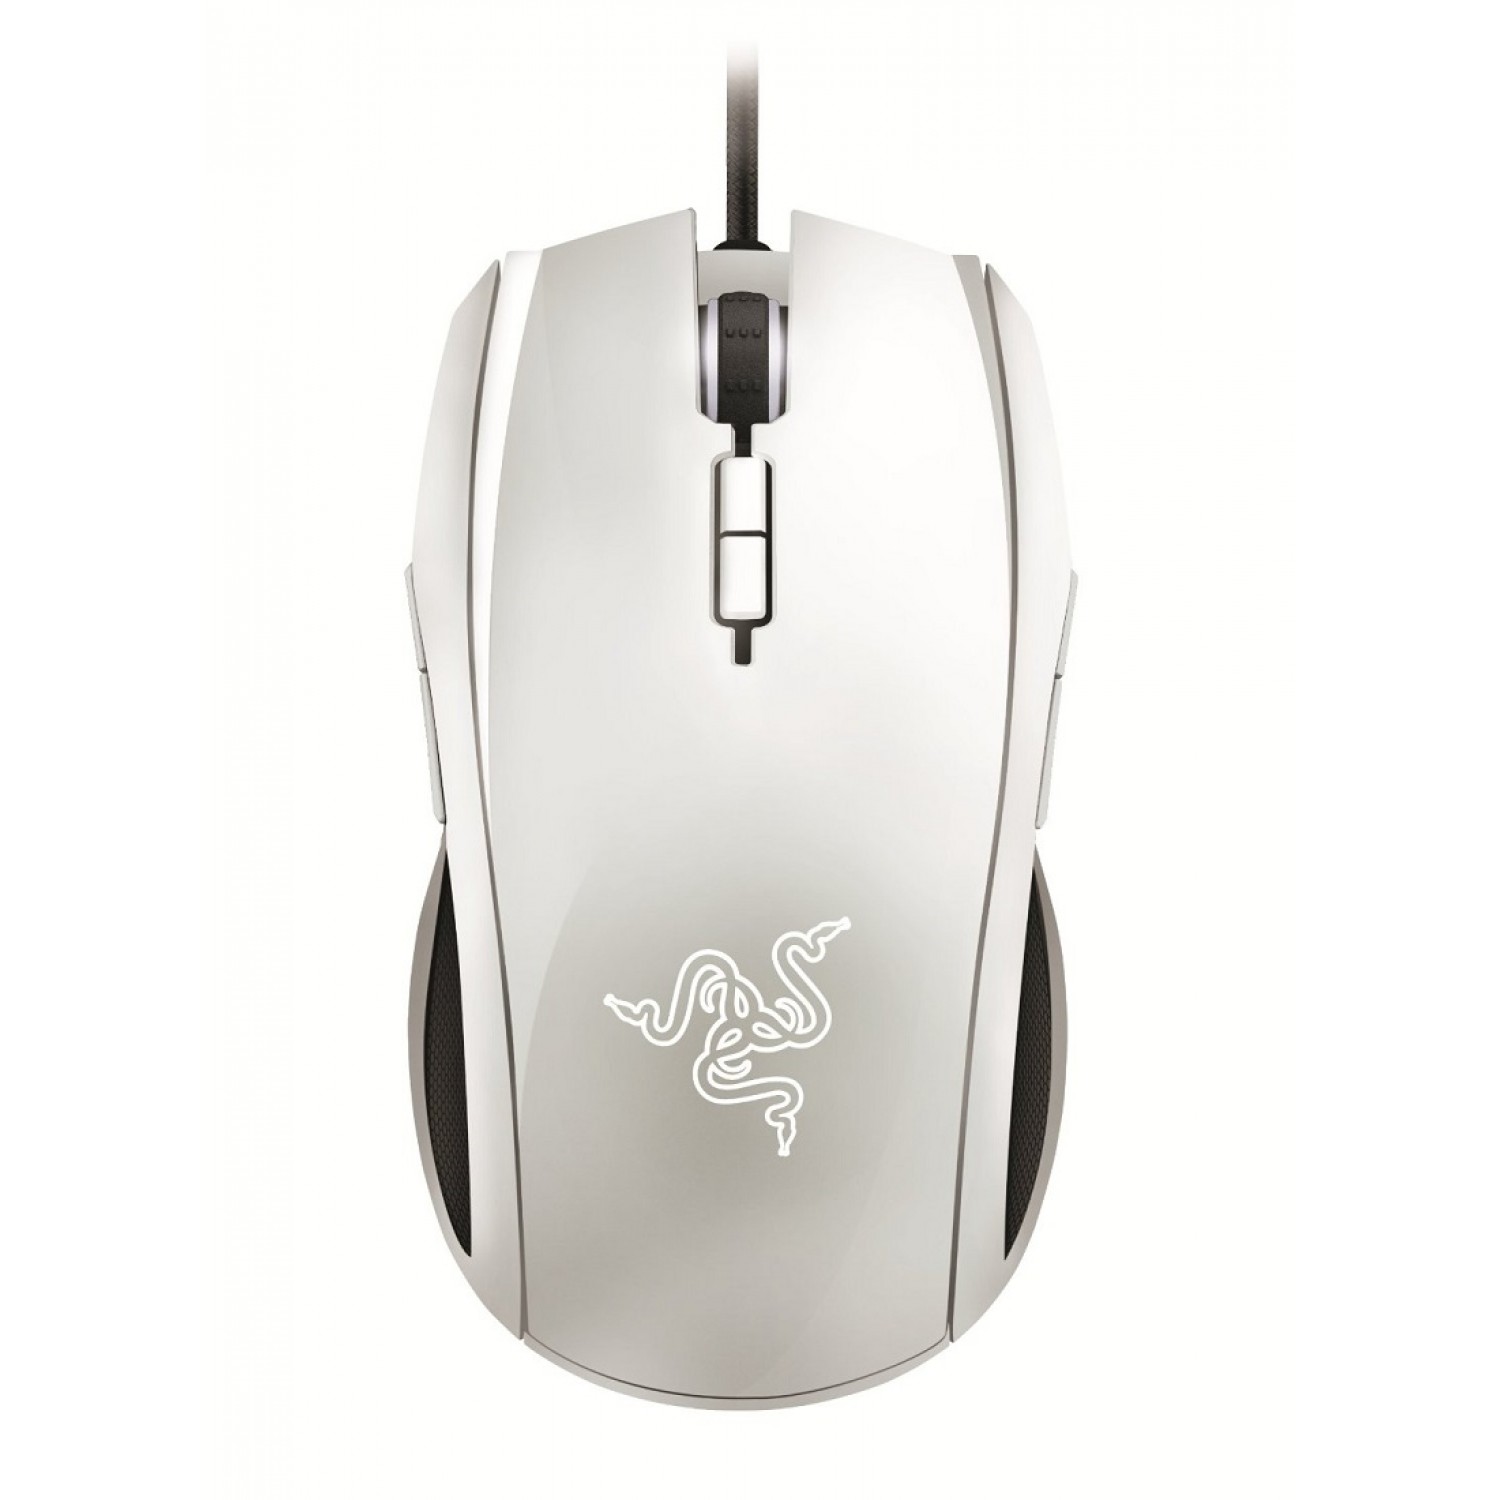 Razer Taipan Ambidextrous White Gaming Mouse